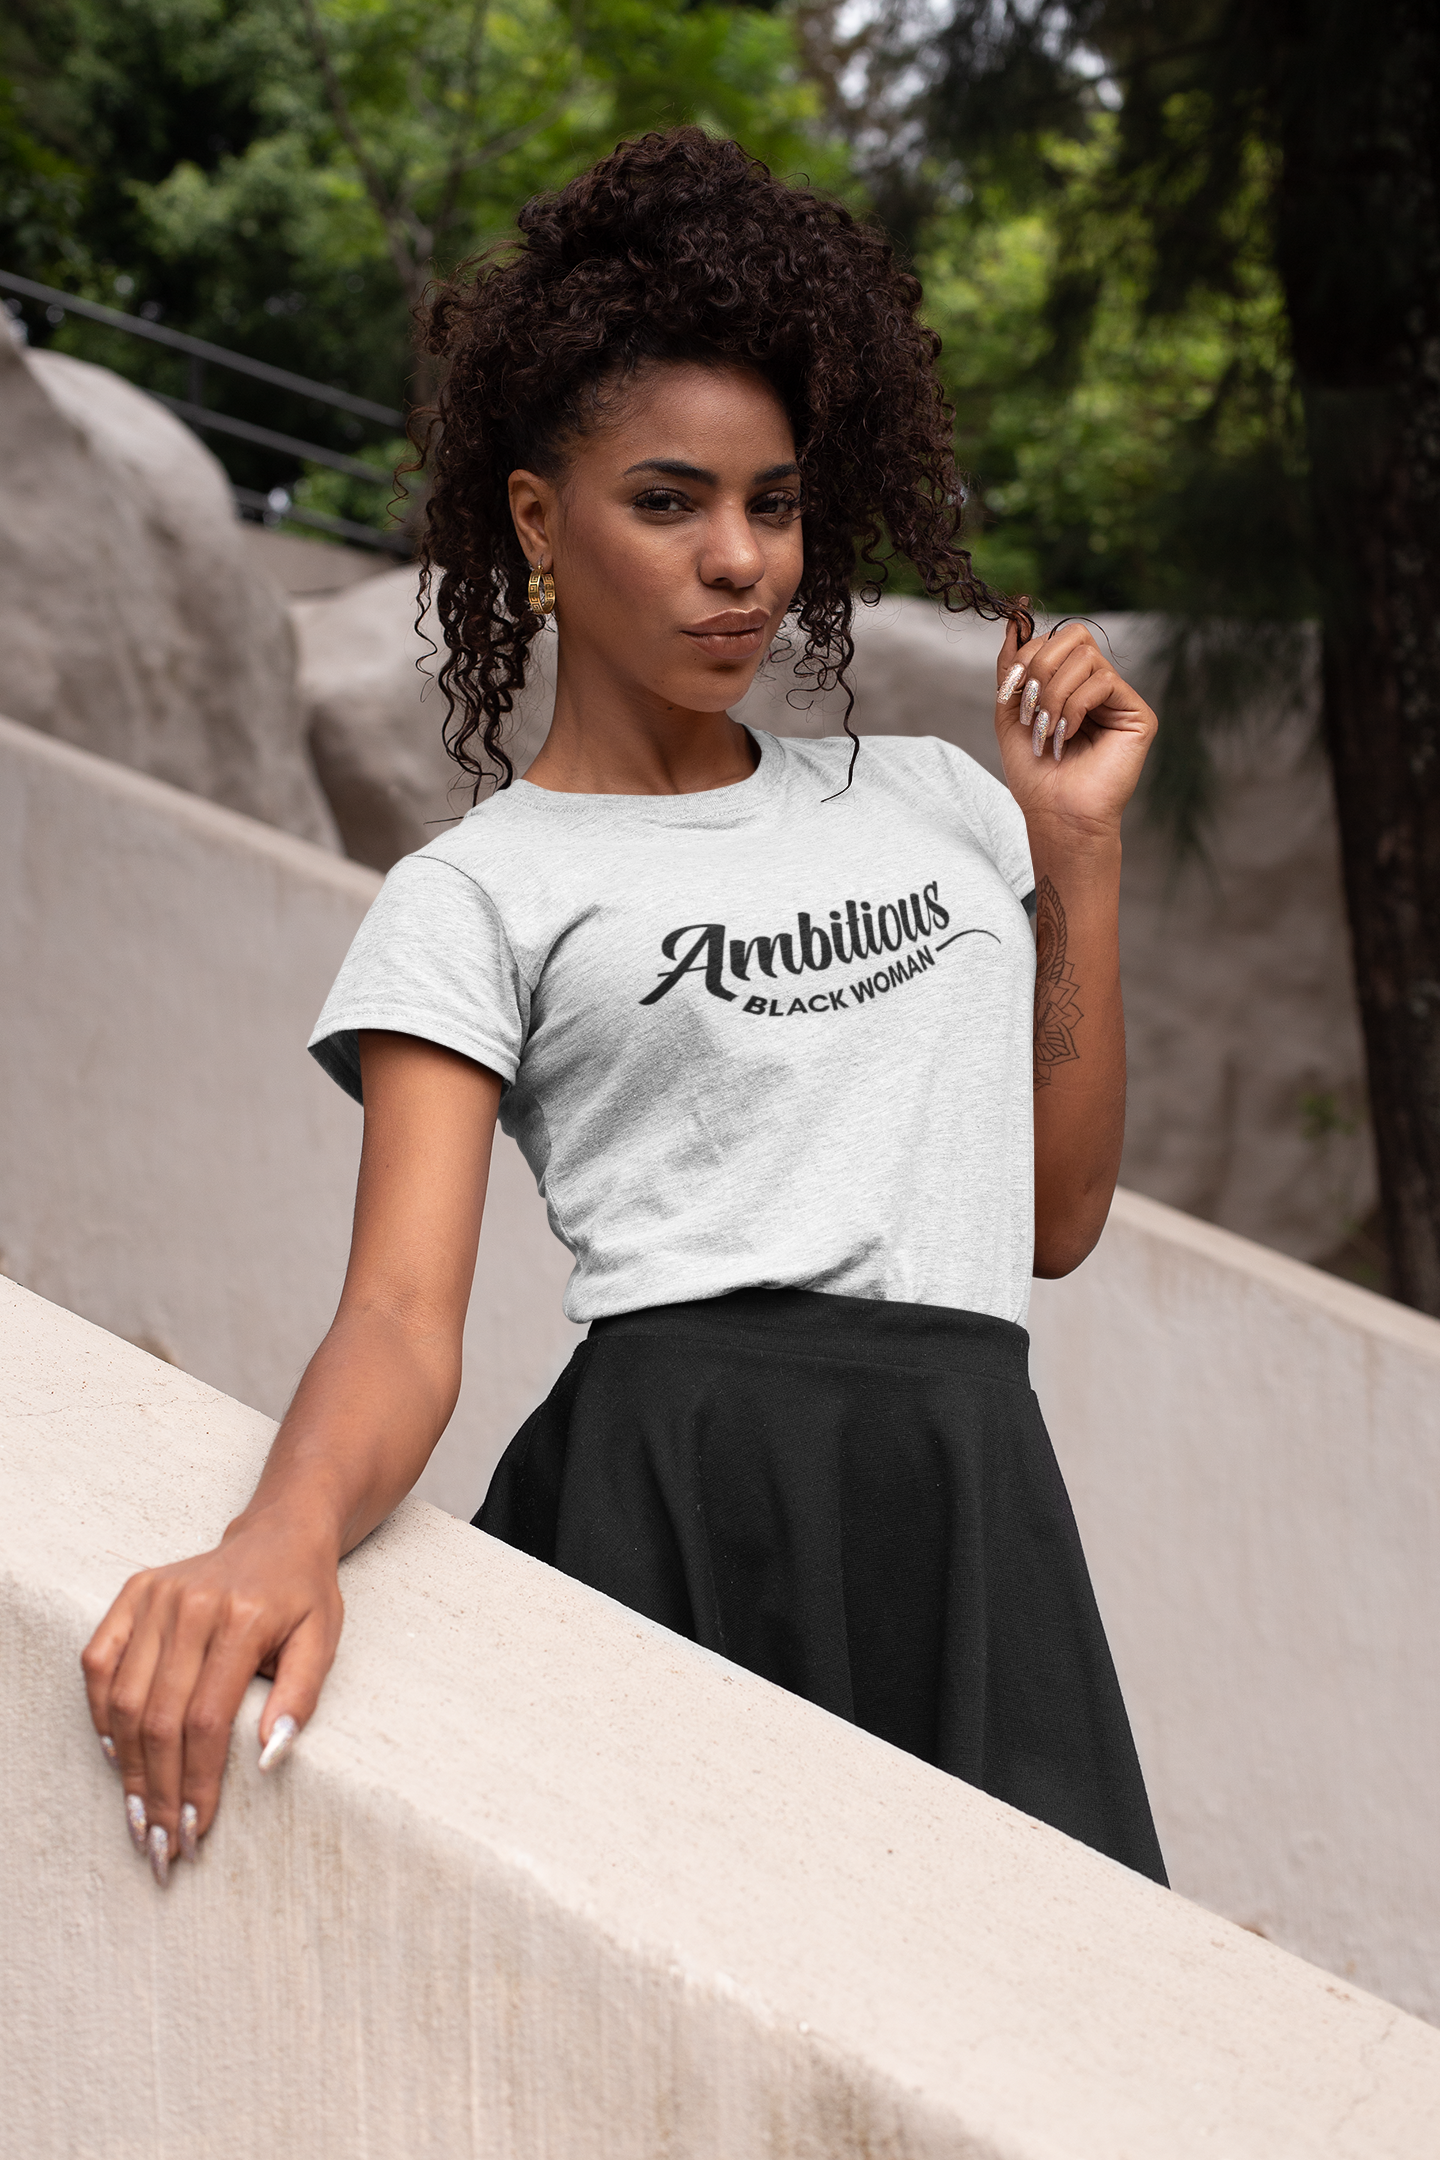 Ambitious Black Woman T-Shirt (Unisex)